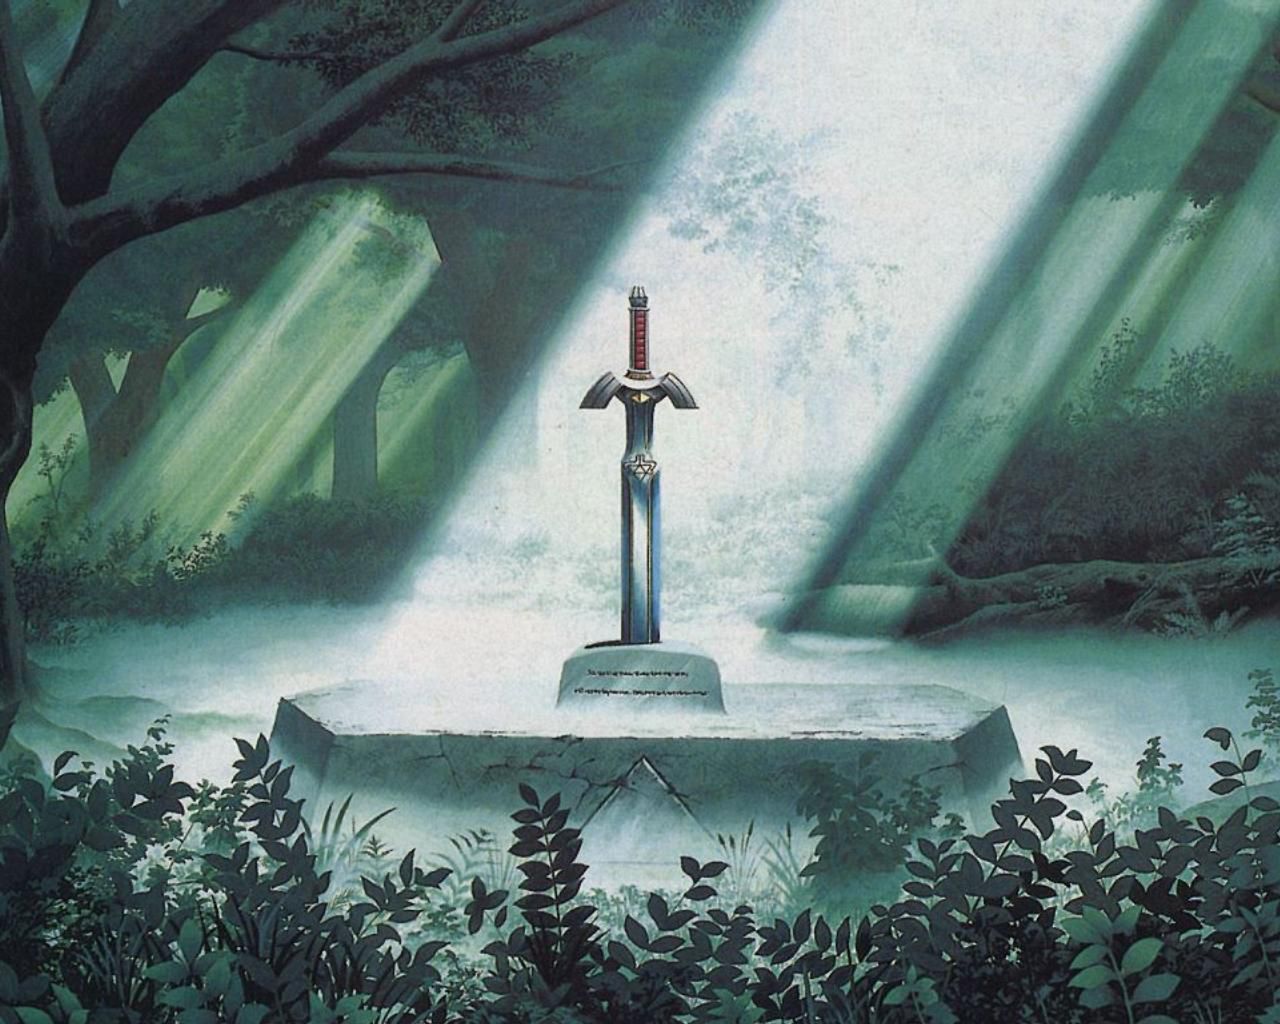 Master Sword, jedna z interpretacji legendarnego miecza ze skały (źródło: Legend of Zelda)